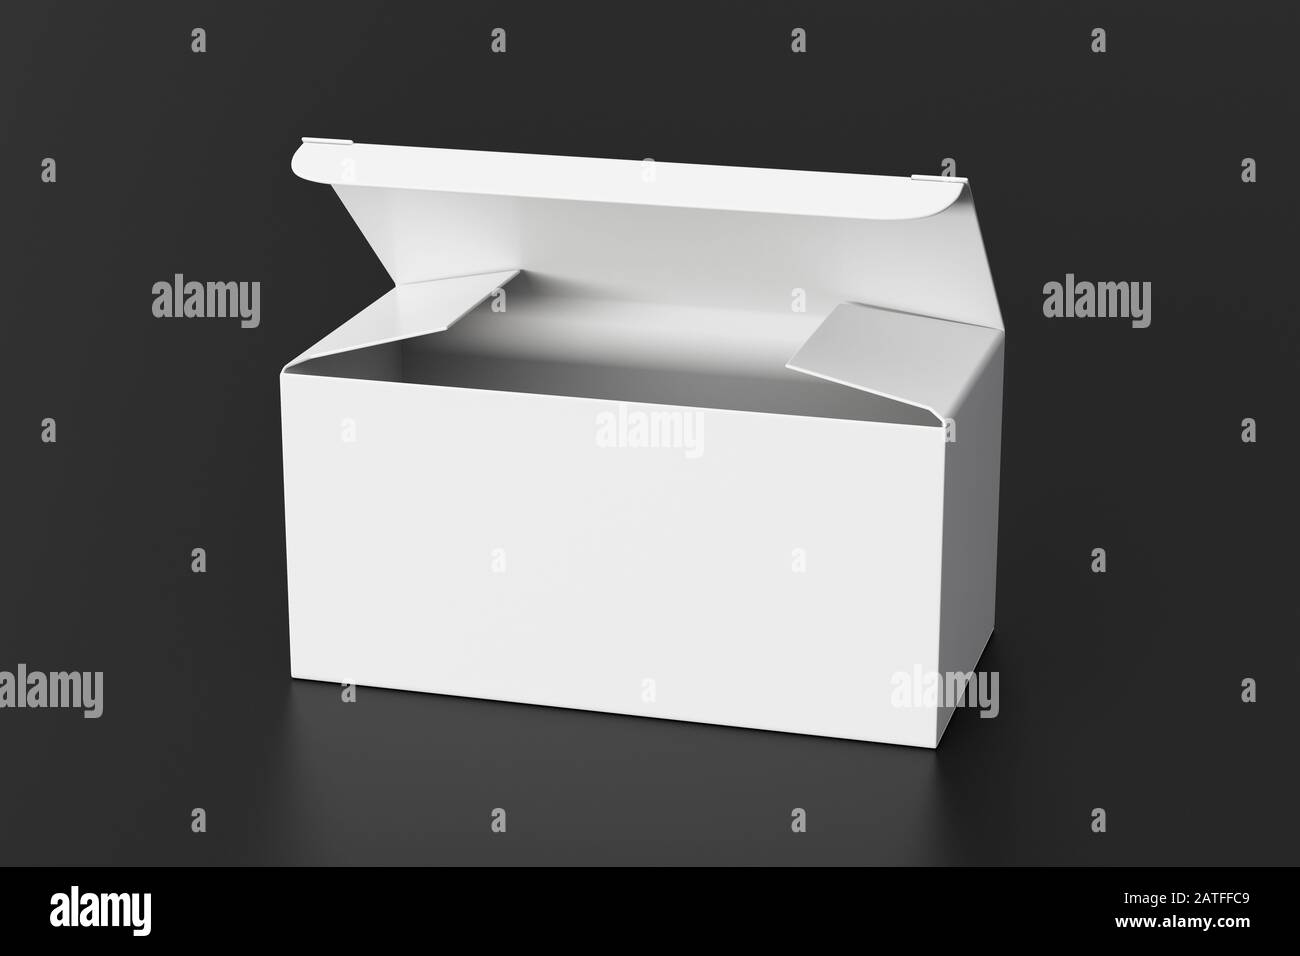 Boîte large blanche vierge avec couvercle à rabat ouvert sur fond noir. Chemin de détourage autour de la maquette de boîte Banque D'Images